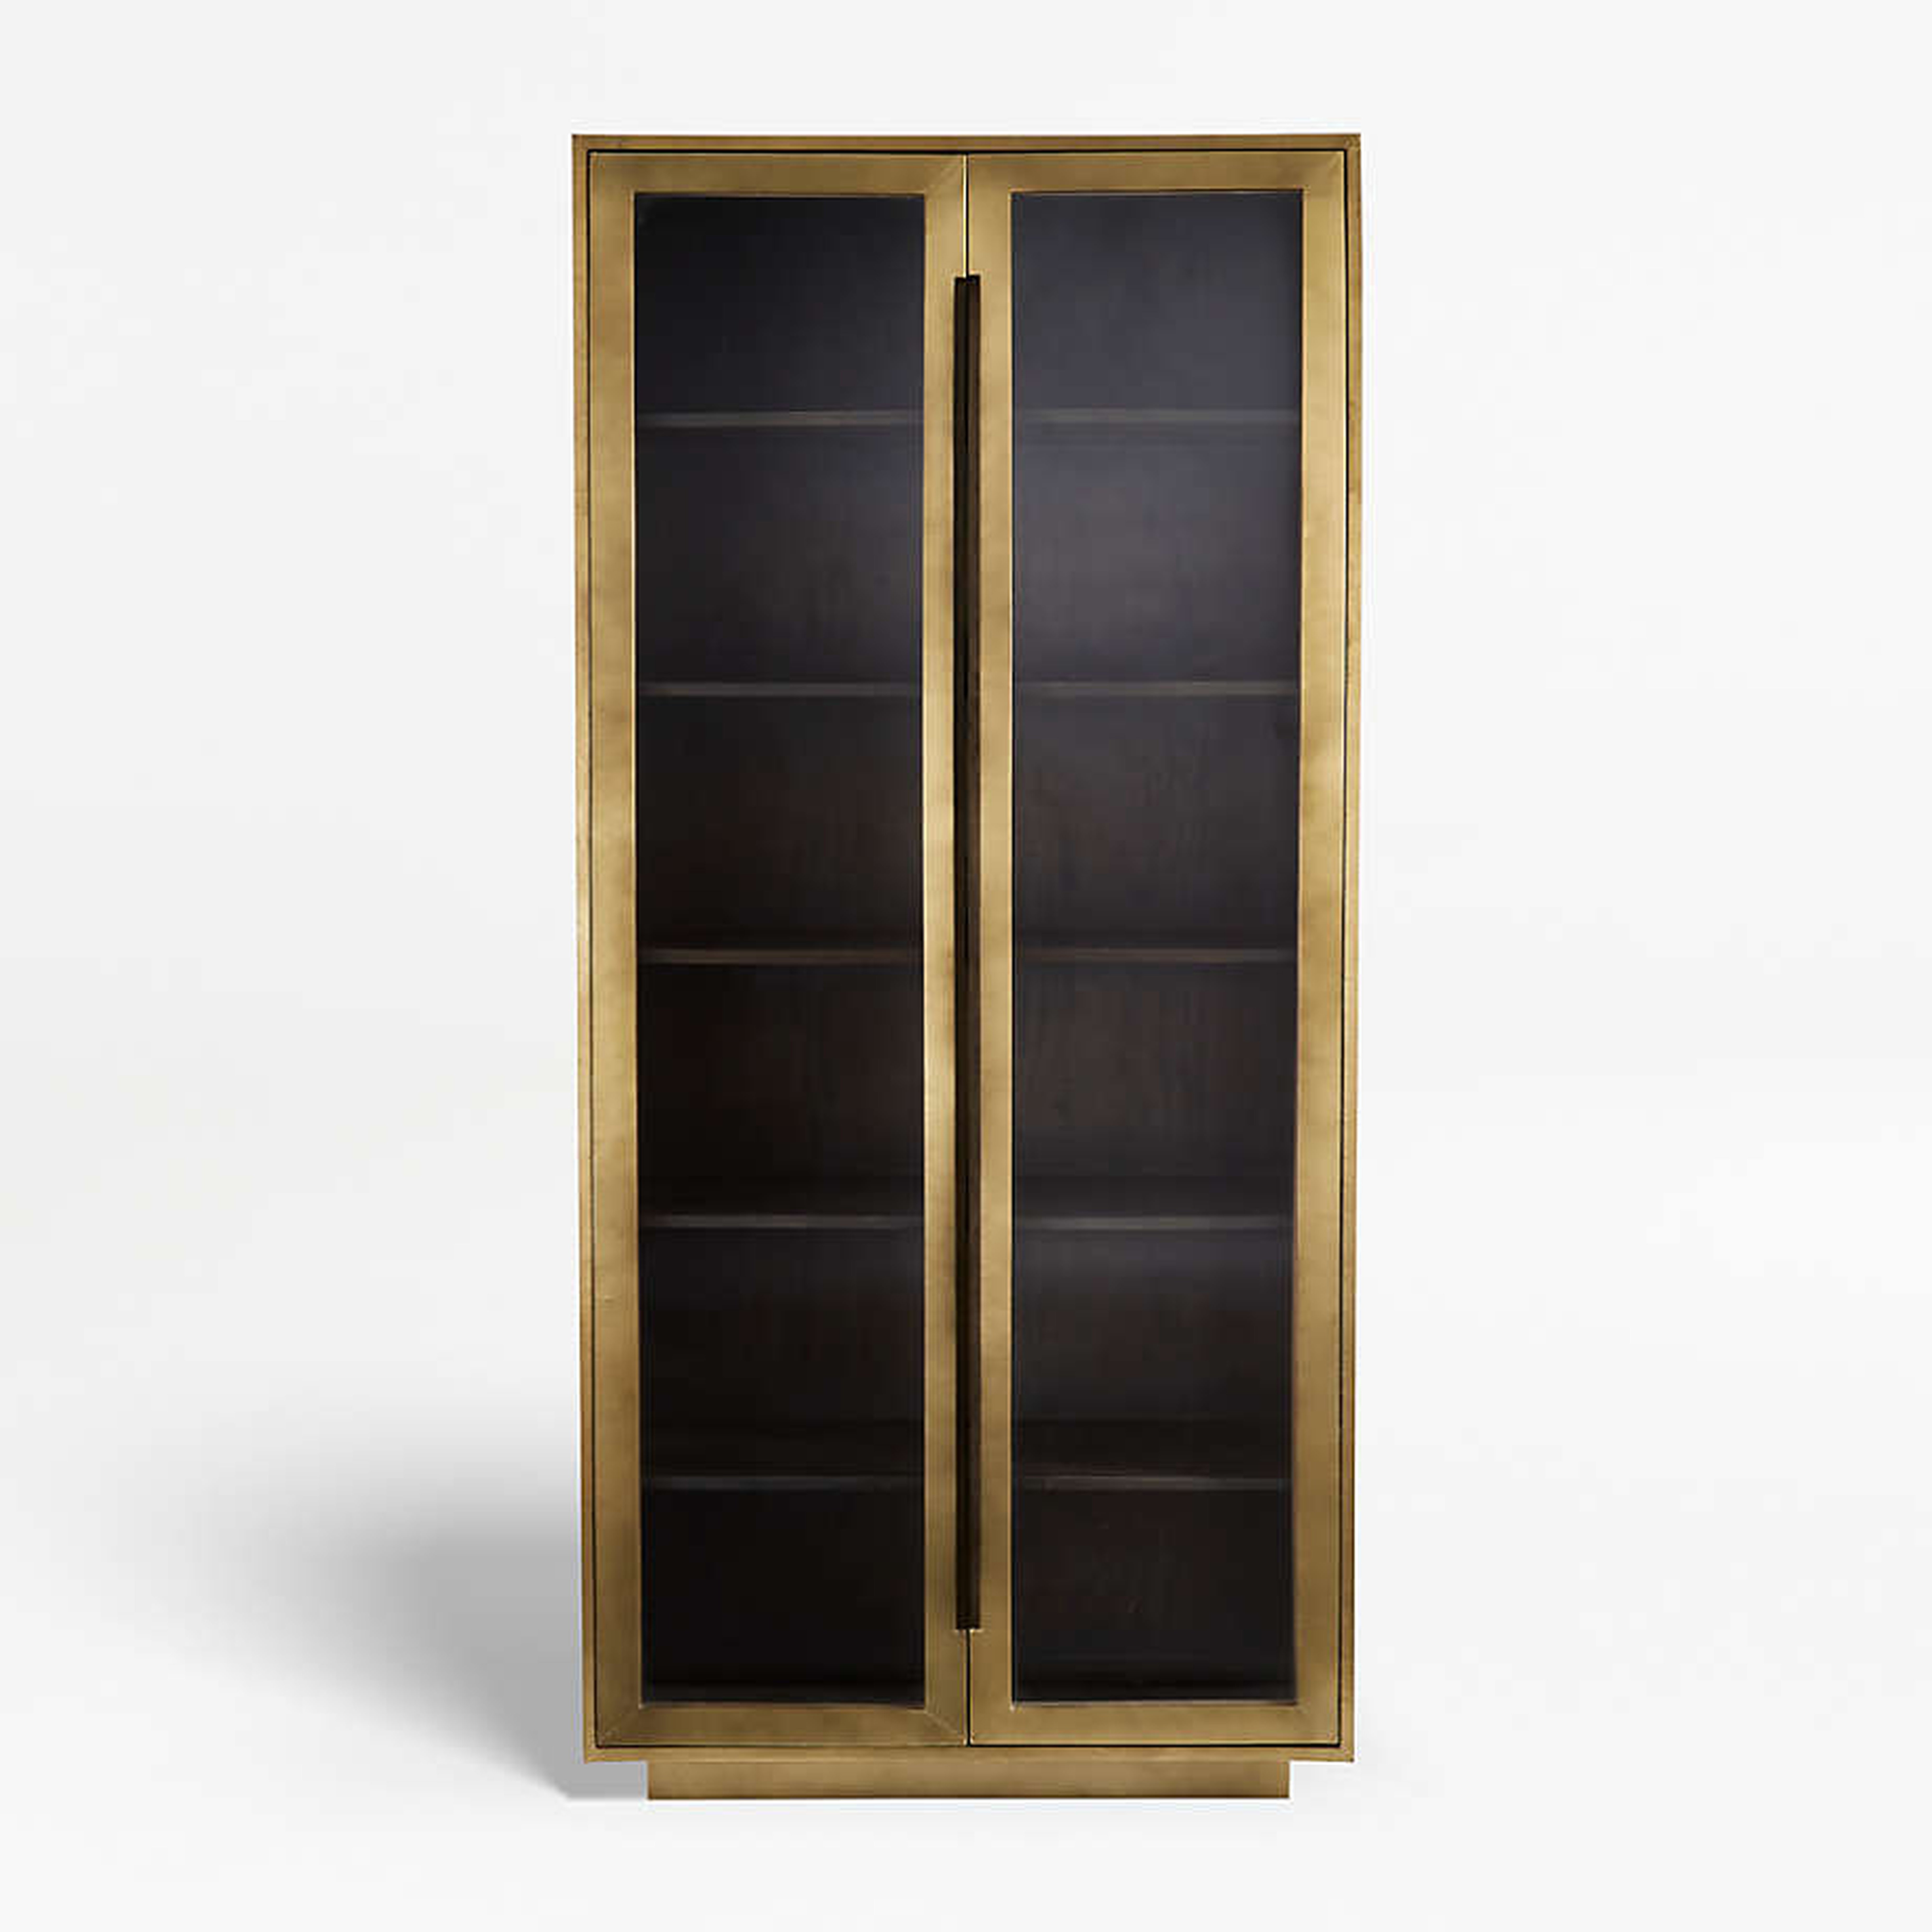 Freda Glass Door Cabinet - Crate and Barrel